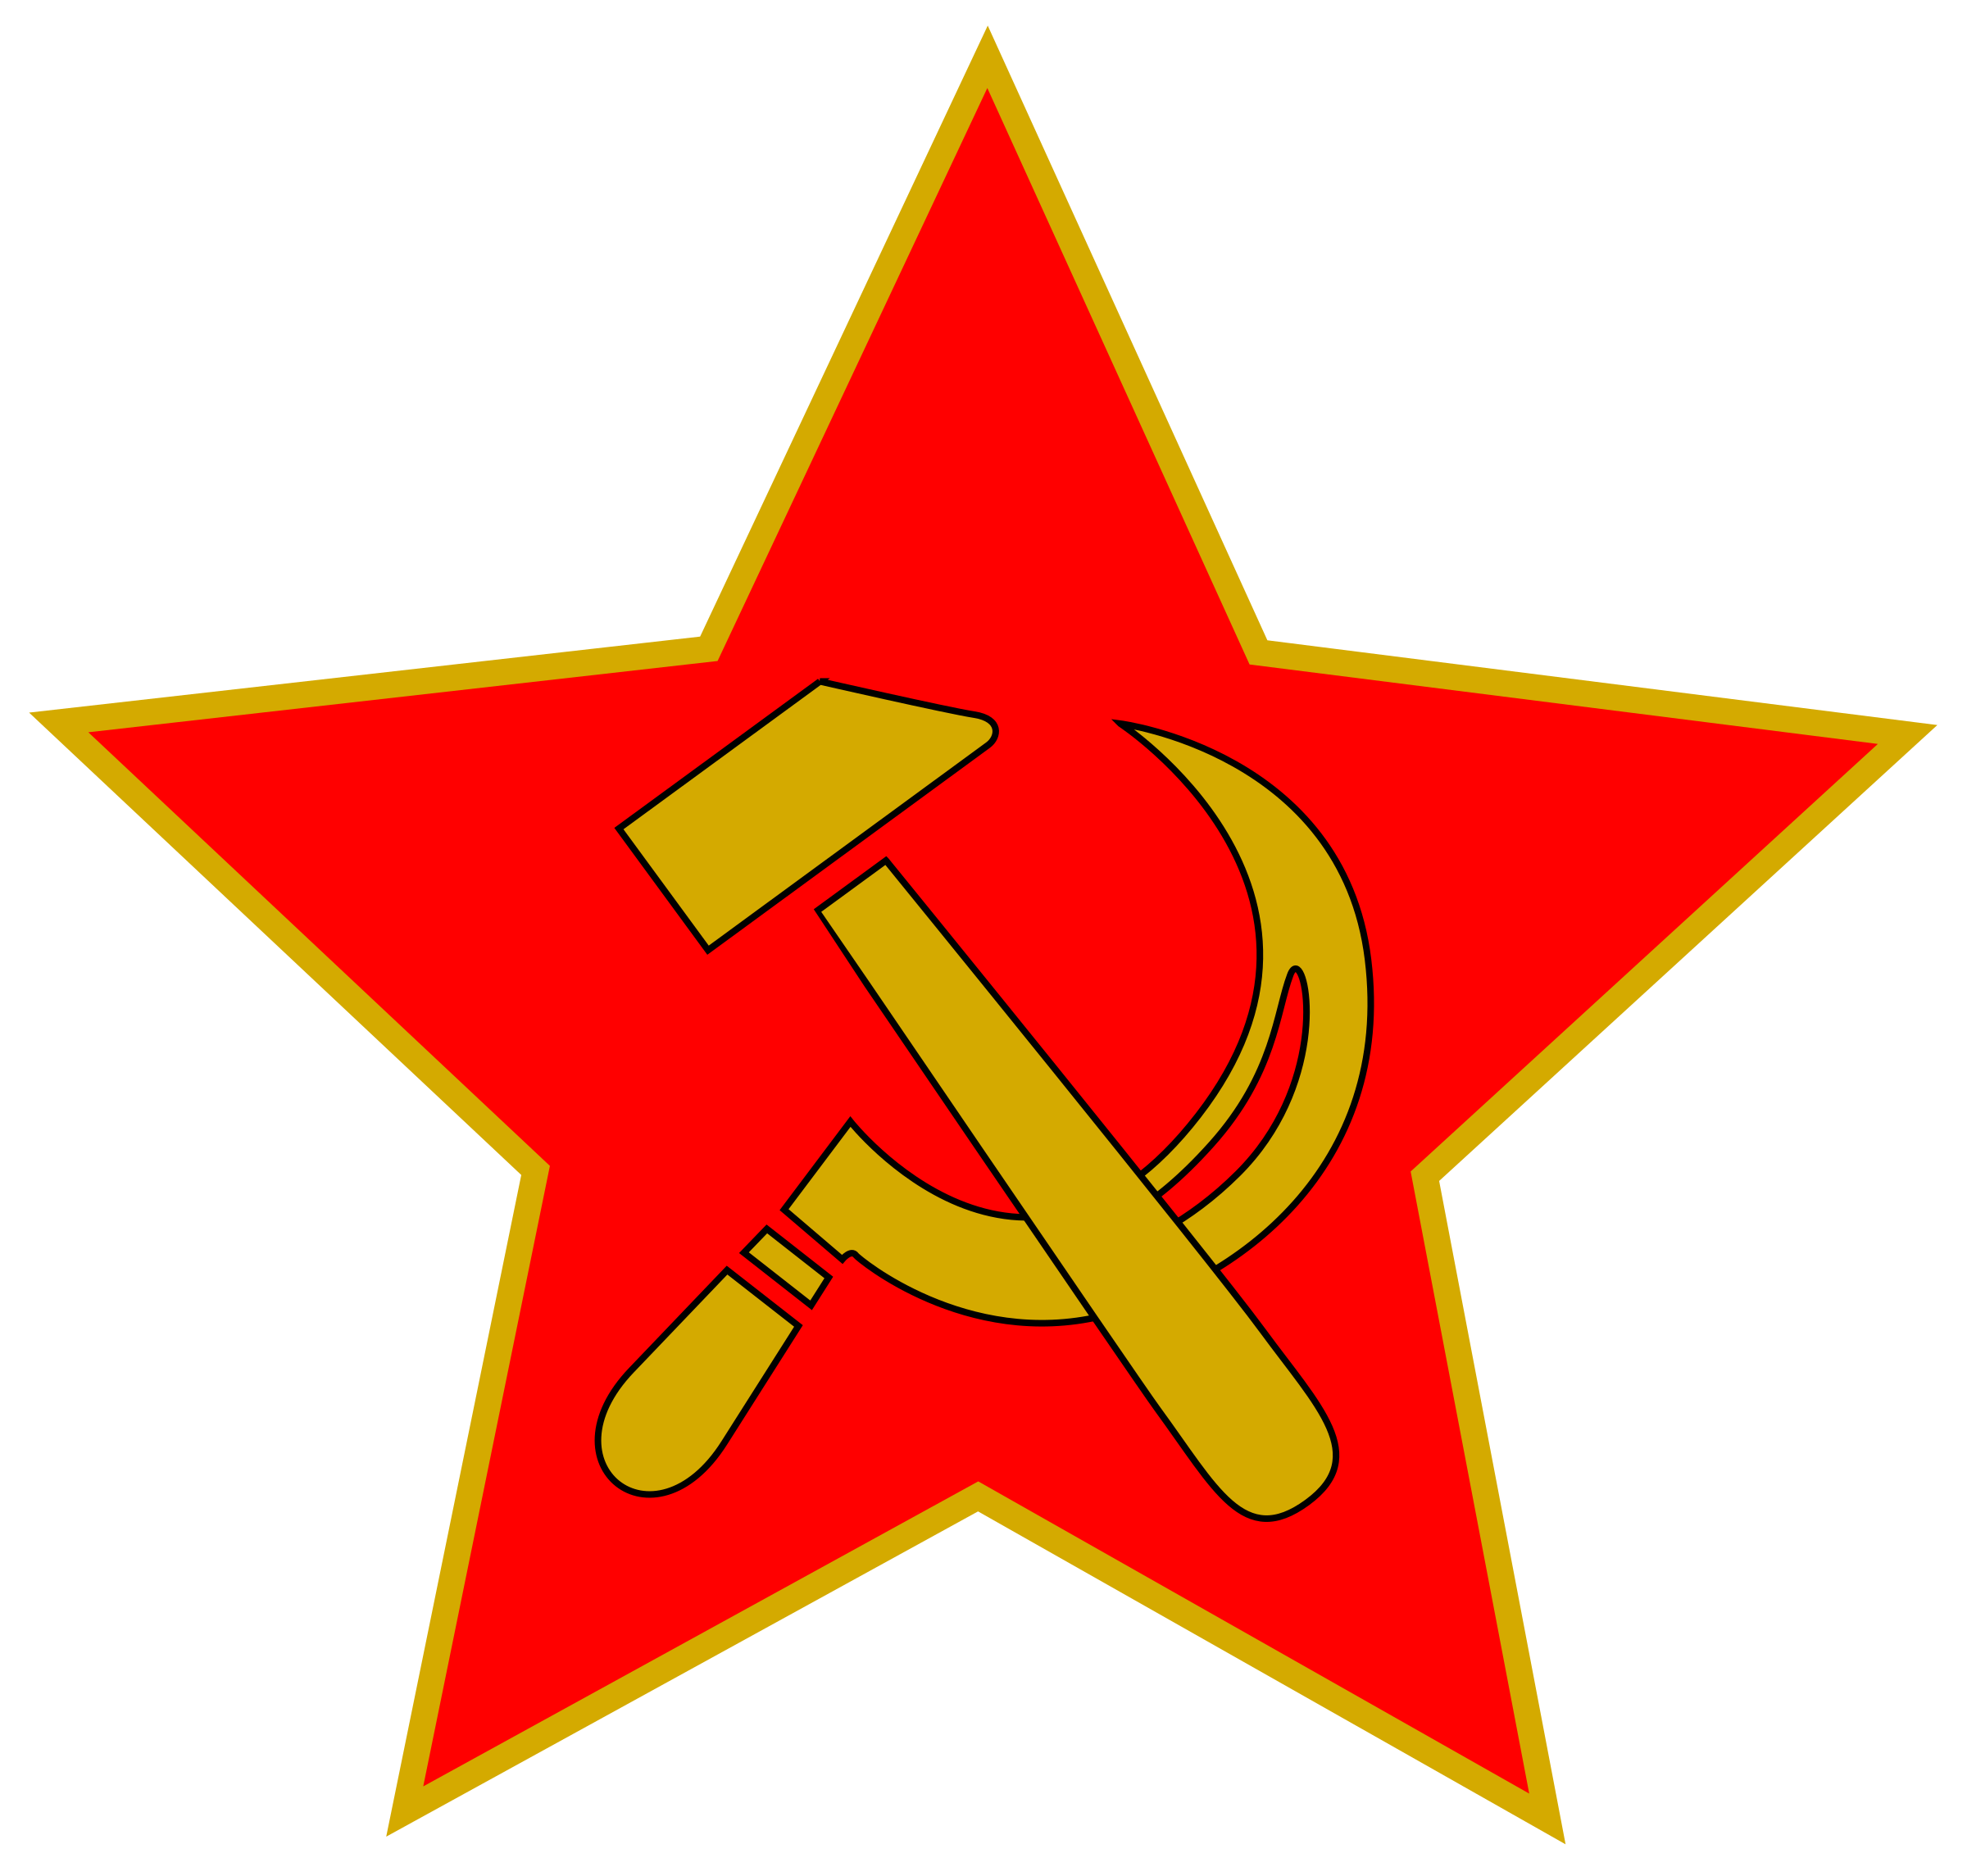 الاتحاد السوفيتي شعار مجاني PNG الصورة